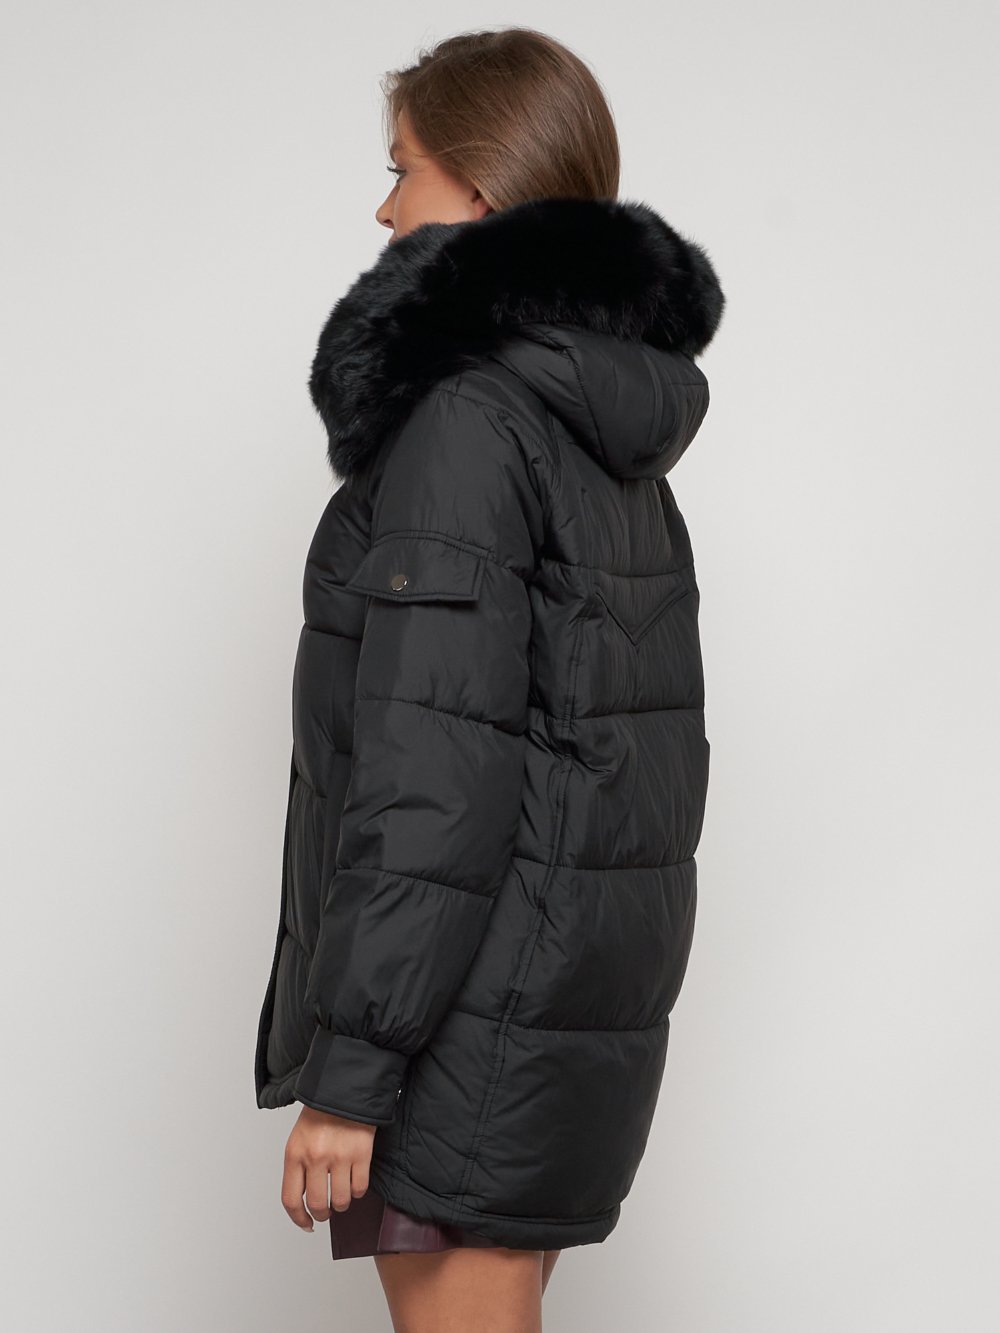 Купить куртку женскую оптом от производителя недорого в Москве 13301Ch 1